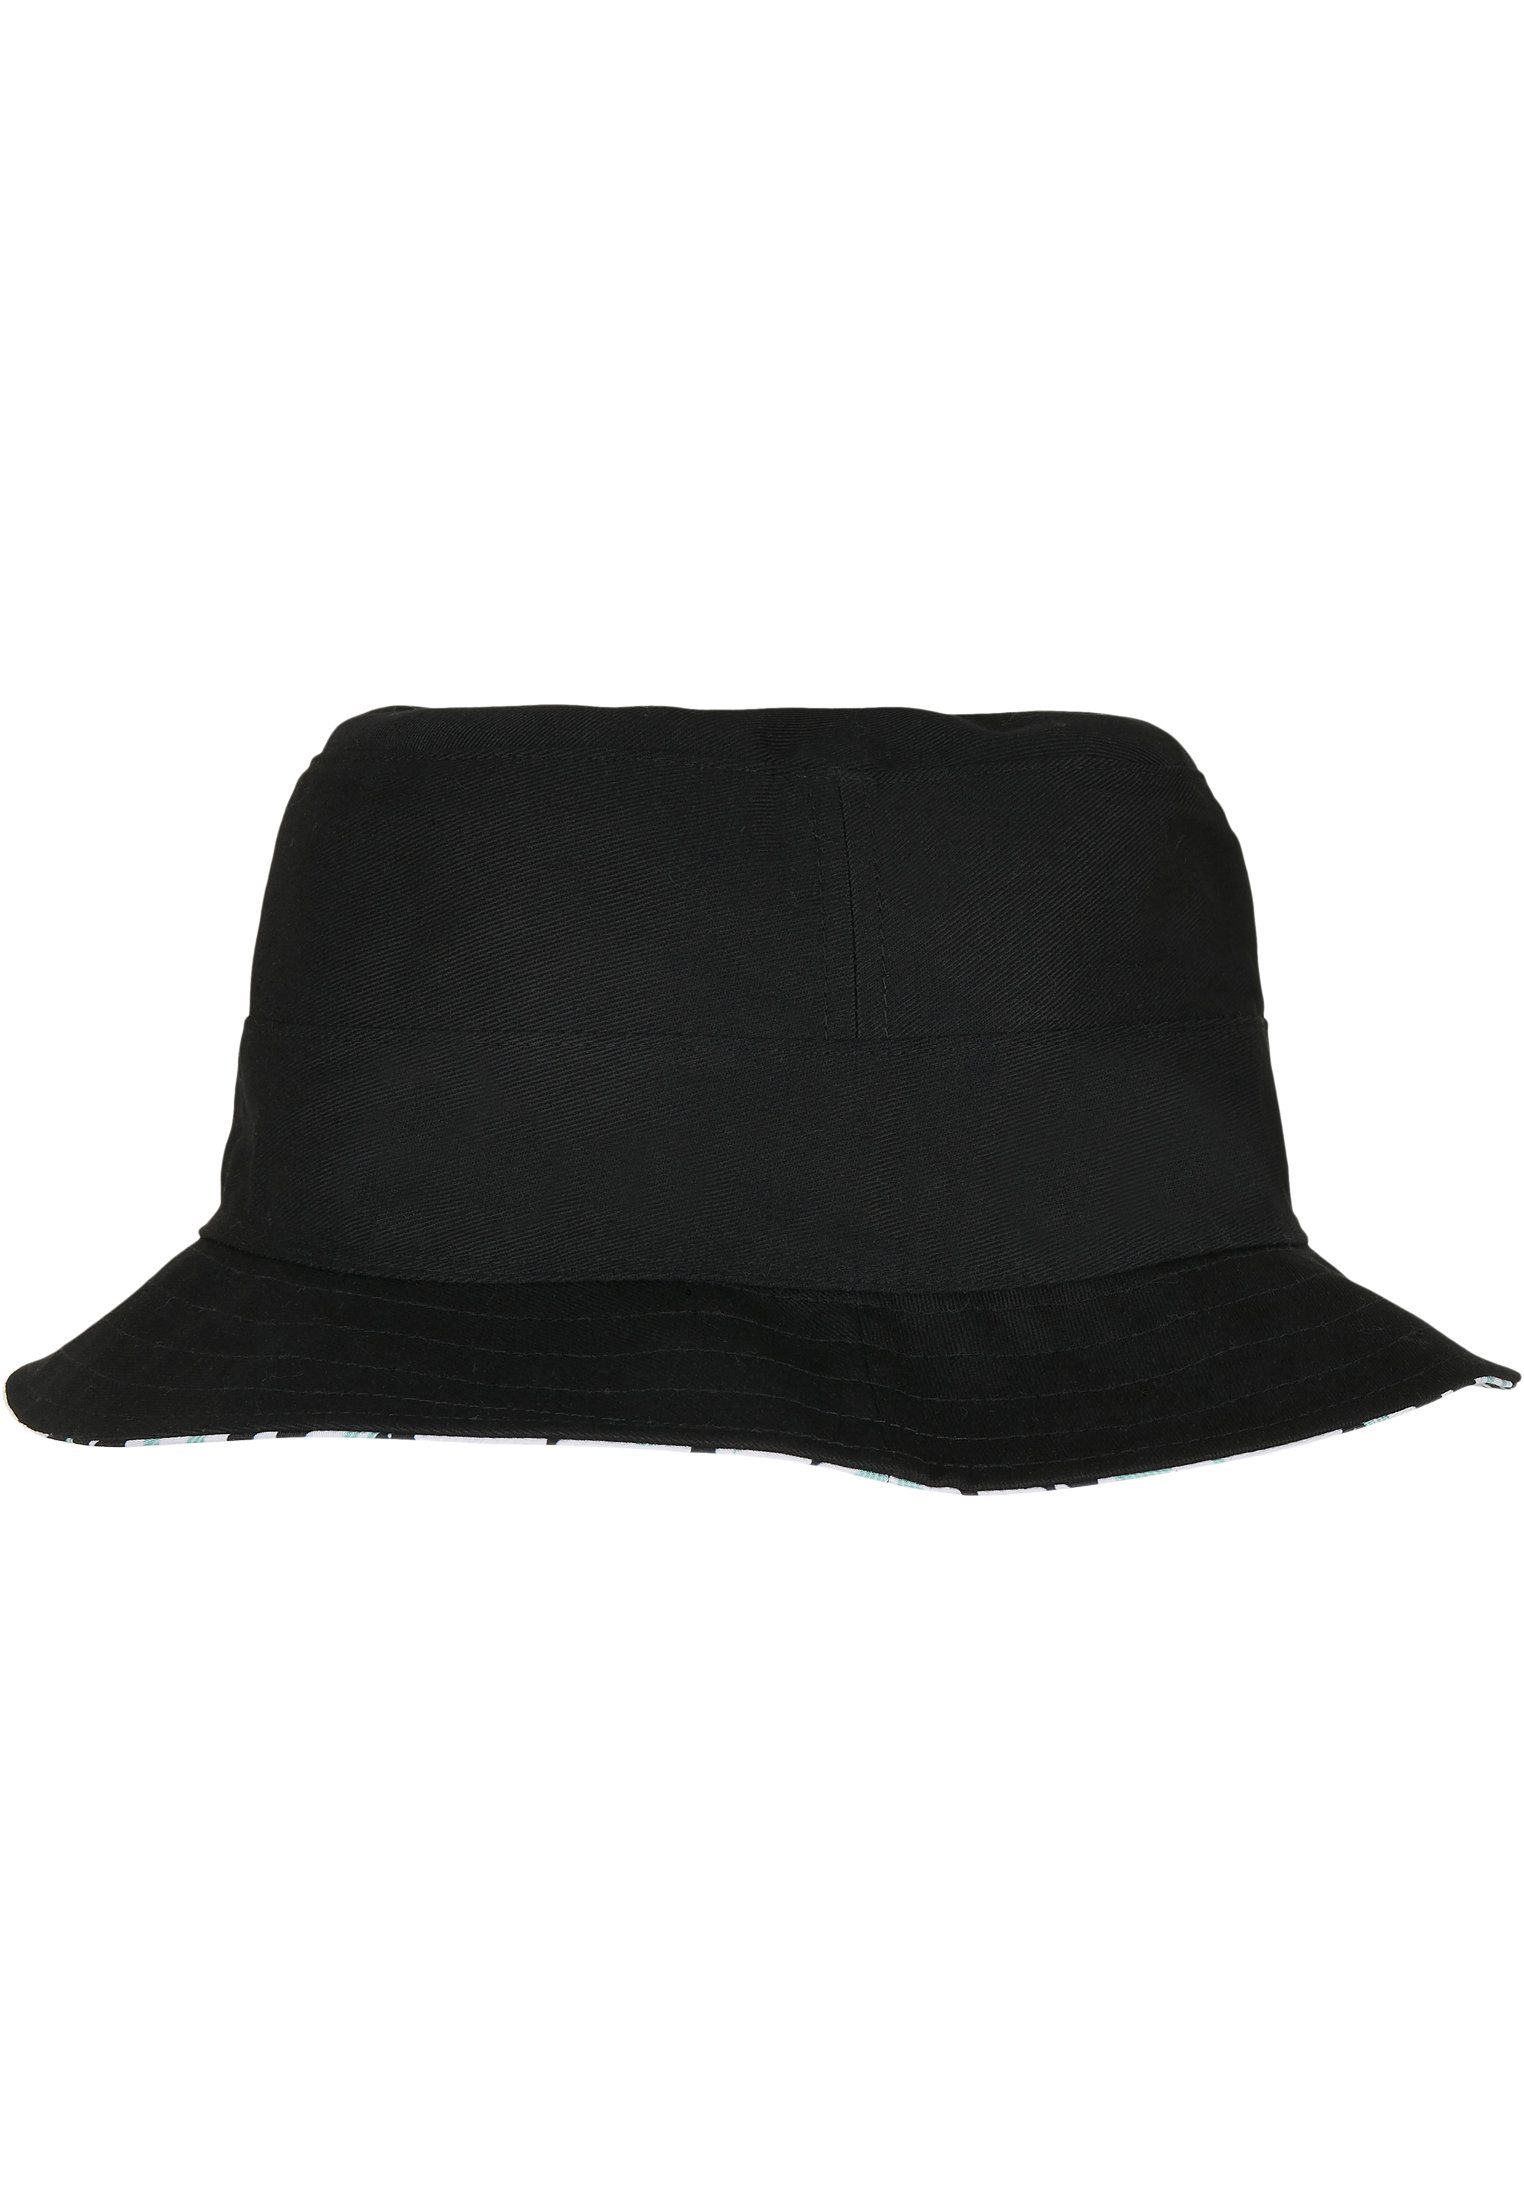 SONS & Reversible Flex Summer CAYLER Hat C&S Aztec WL Cap Bucket